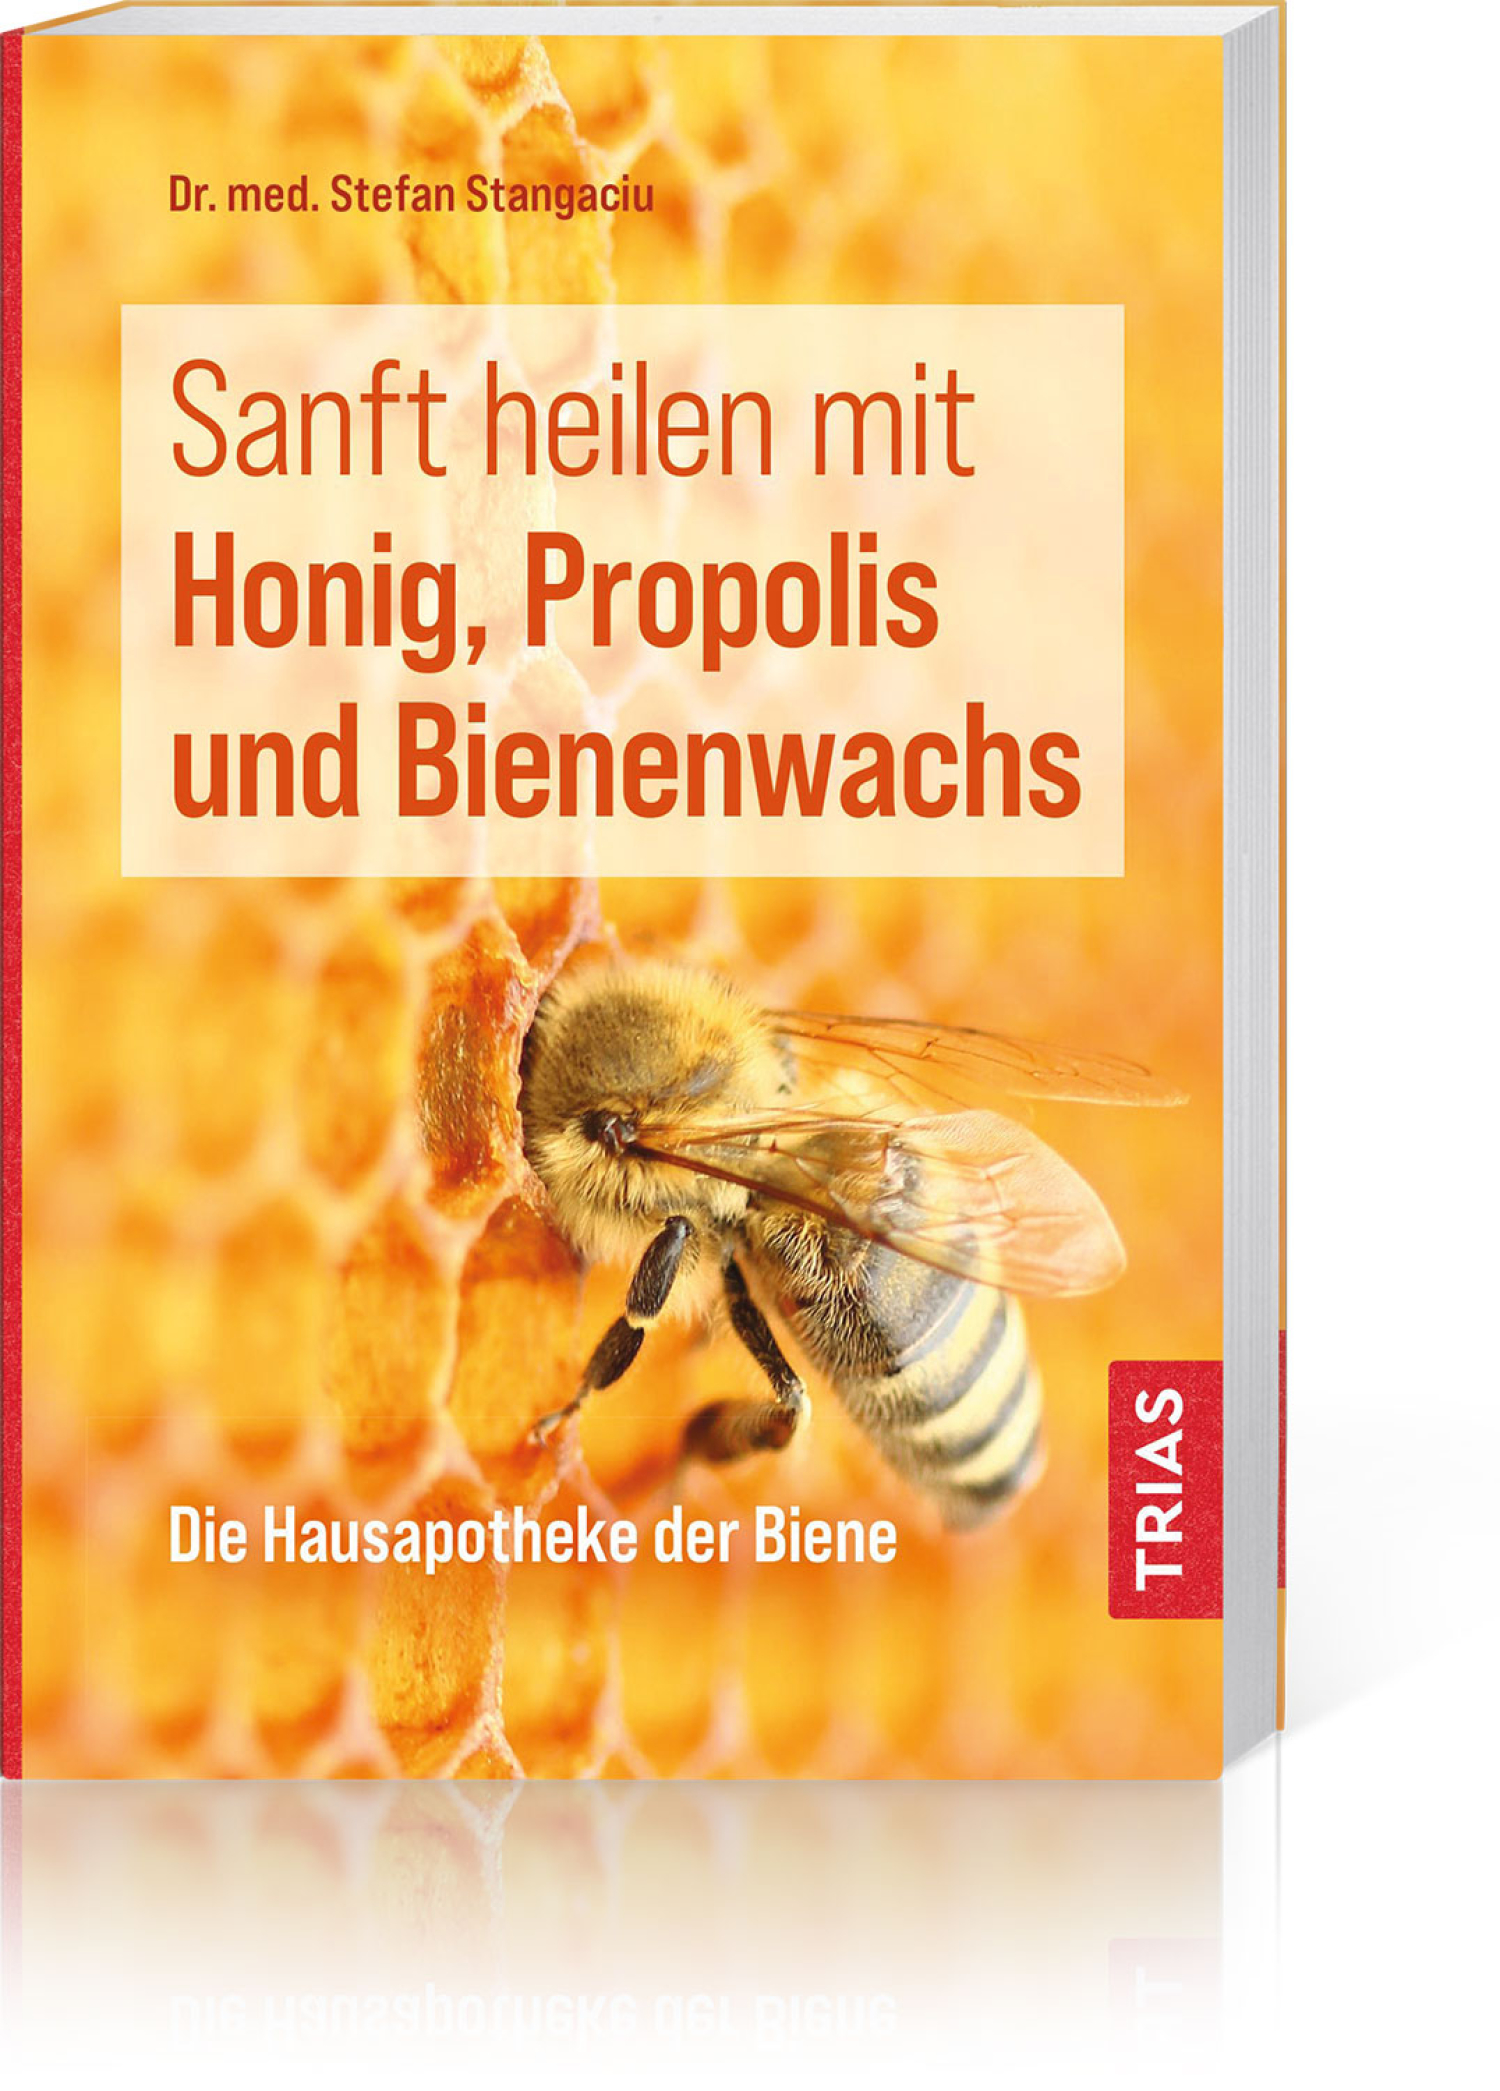 Sanft heilen mit Honig, Propolis und Bienenwachs, Produktbild 1